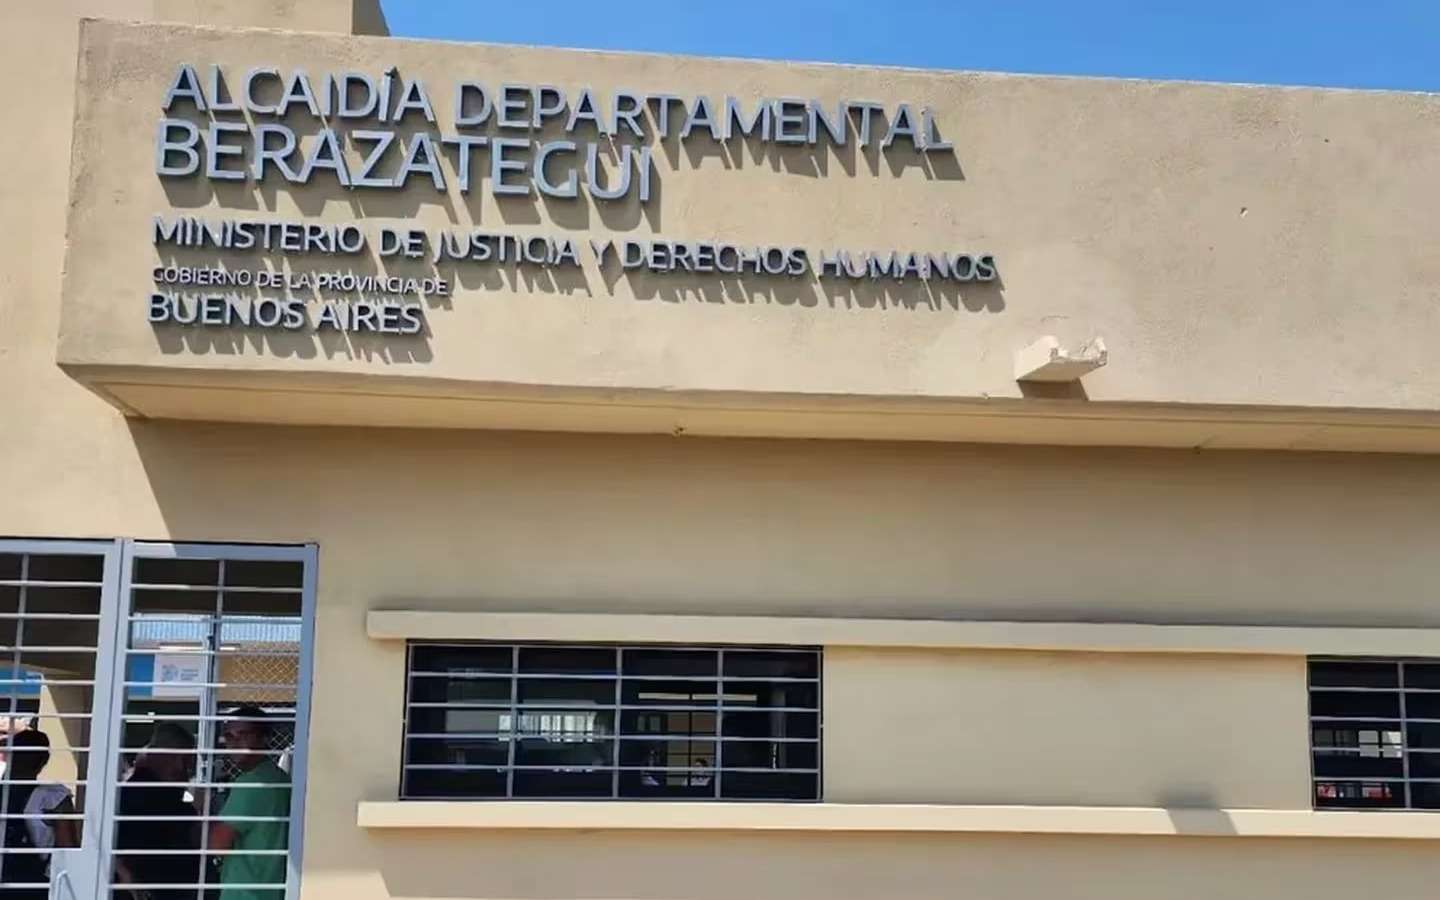 Tres presos por robo rompieron los barrotes de una ventana y se fugaron de una alcaidía en Berazategui